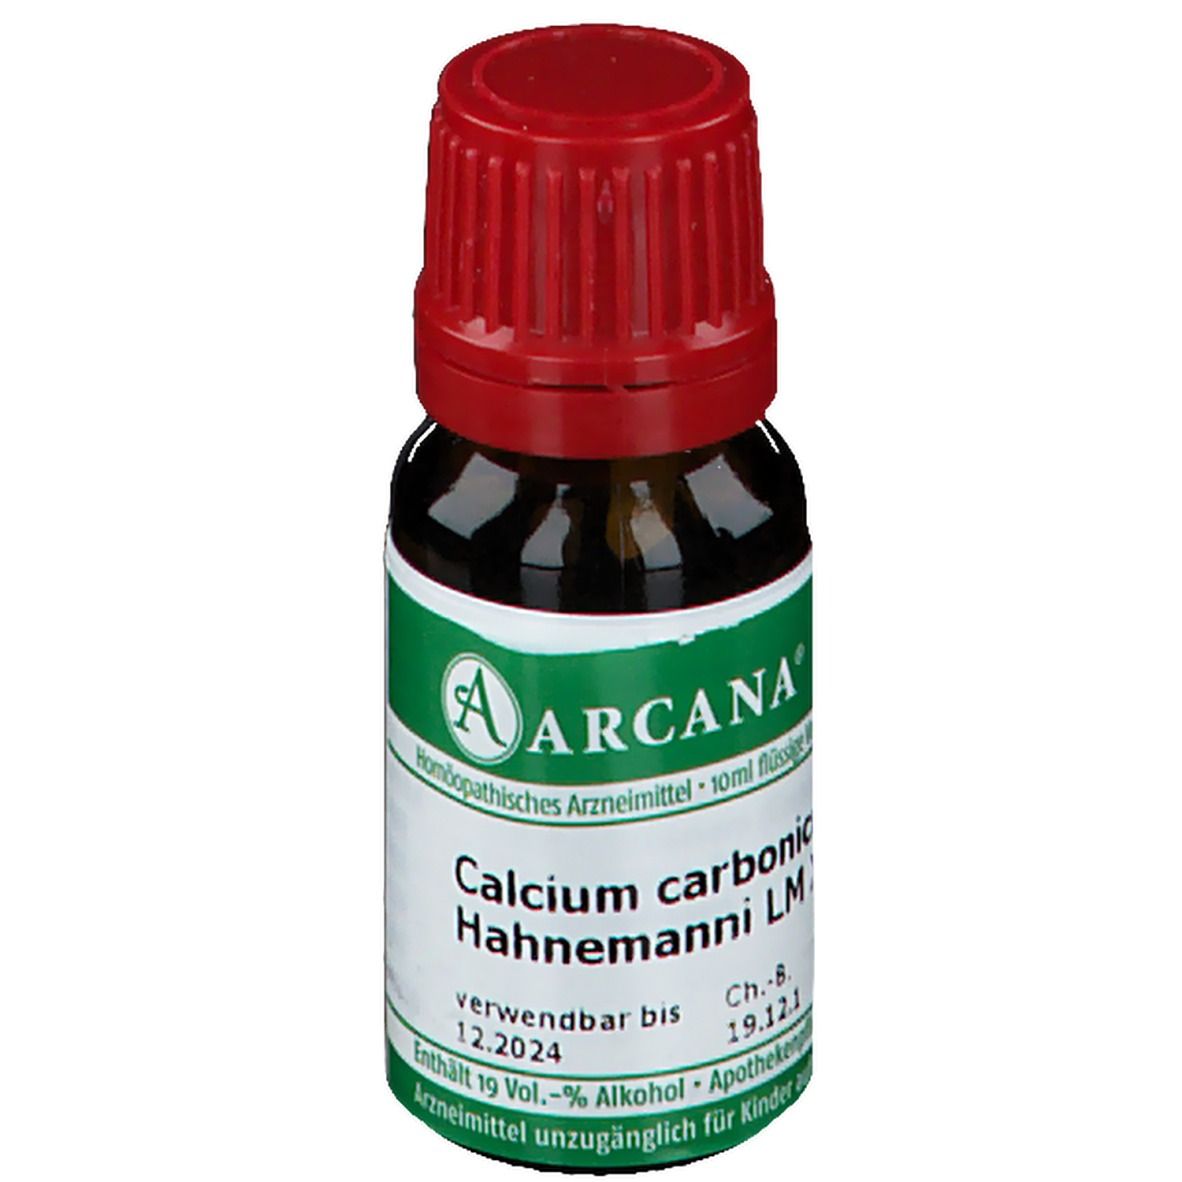 Arcana® Calcium Carbonicum Hahnemanni LM XII